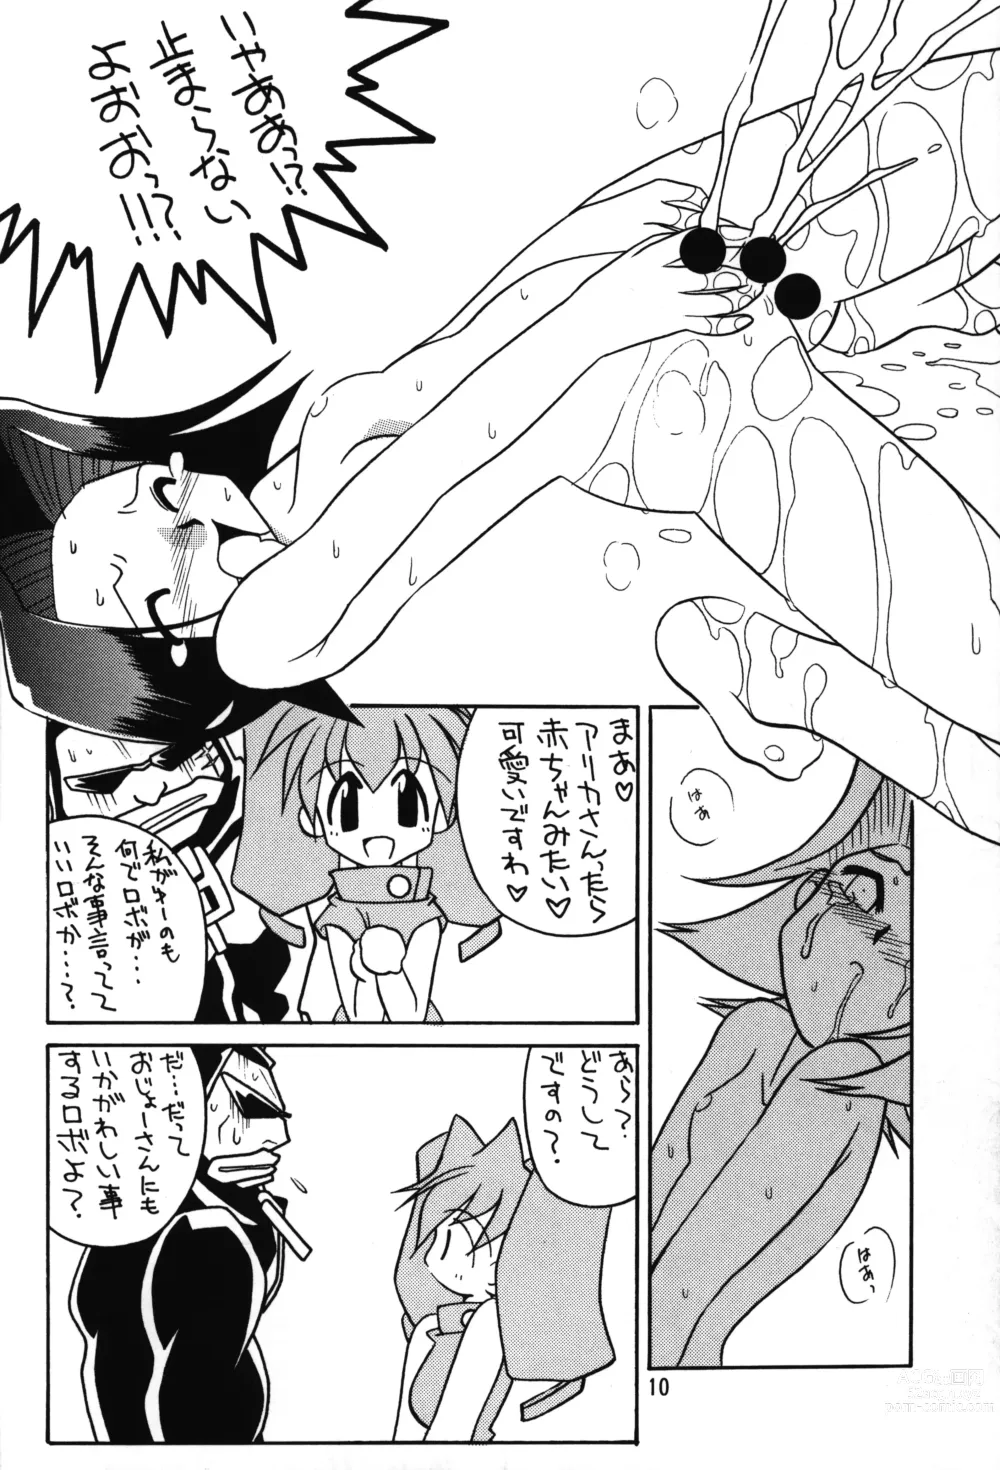 Page 9 of doujinshi Medabot to Tatami Furui Hou ga ii!